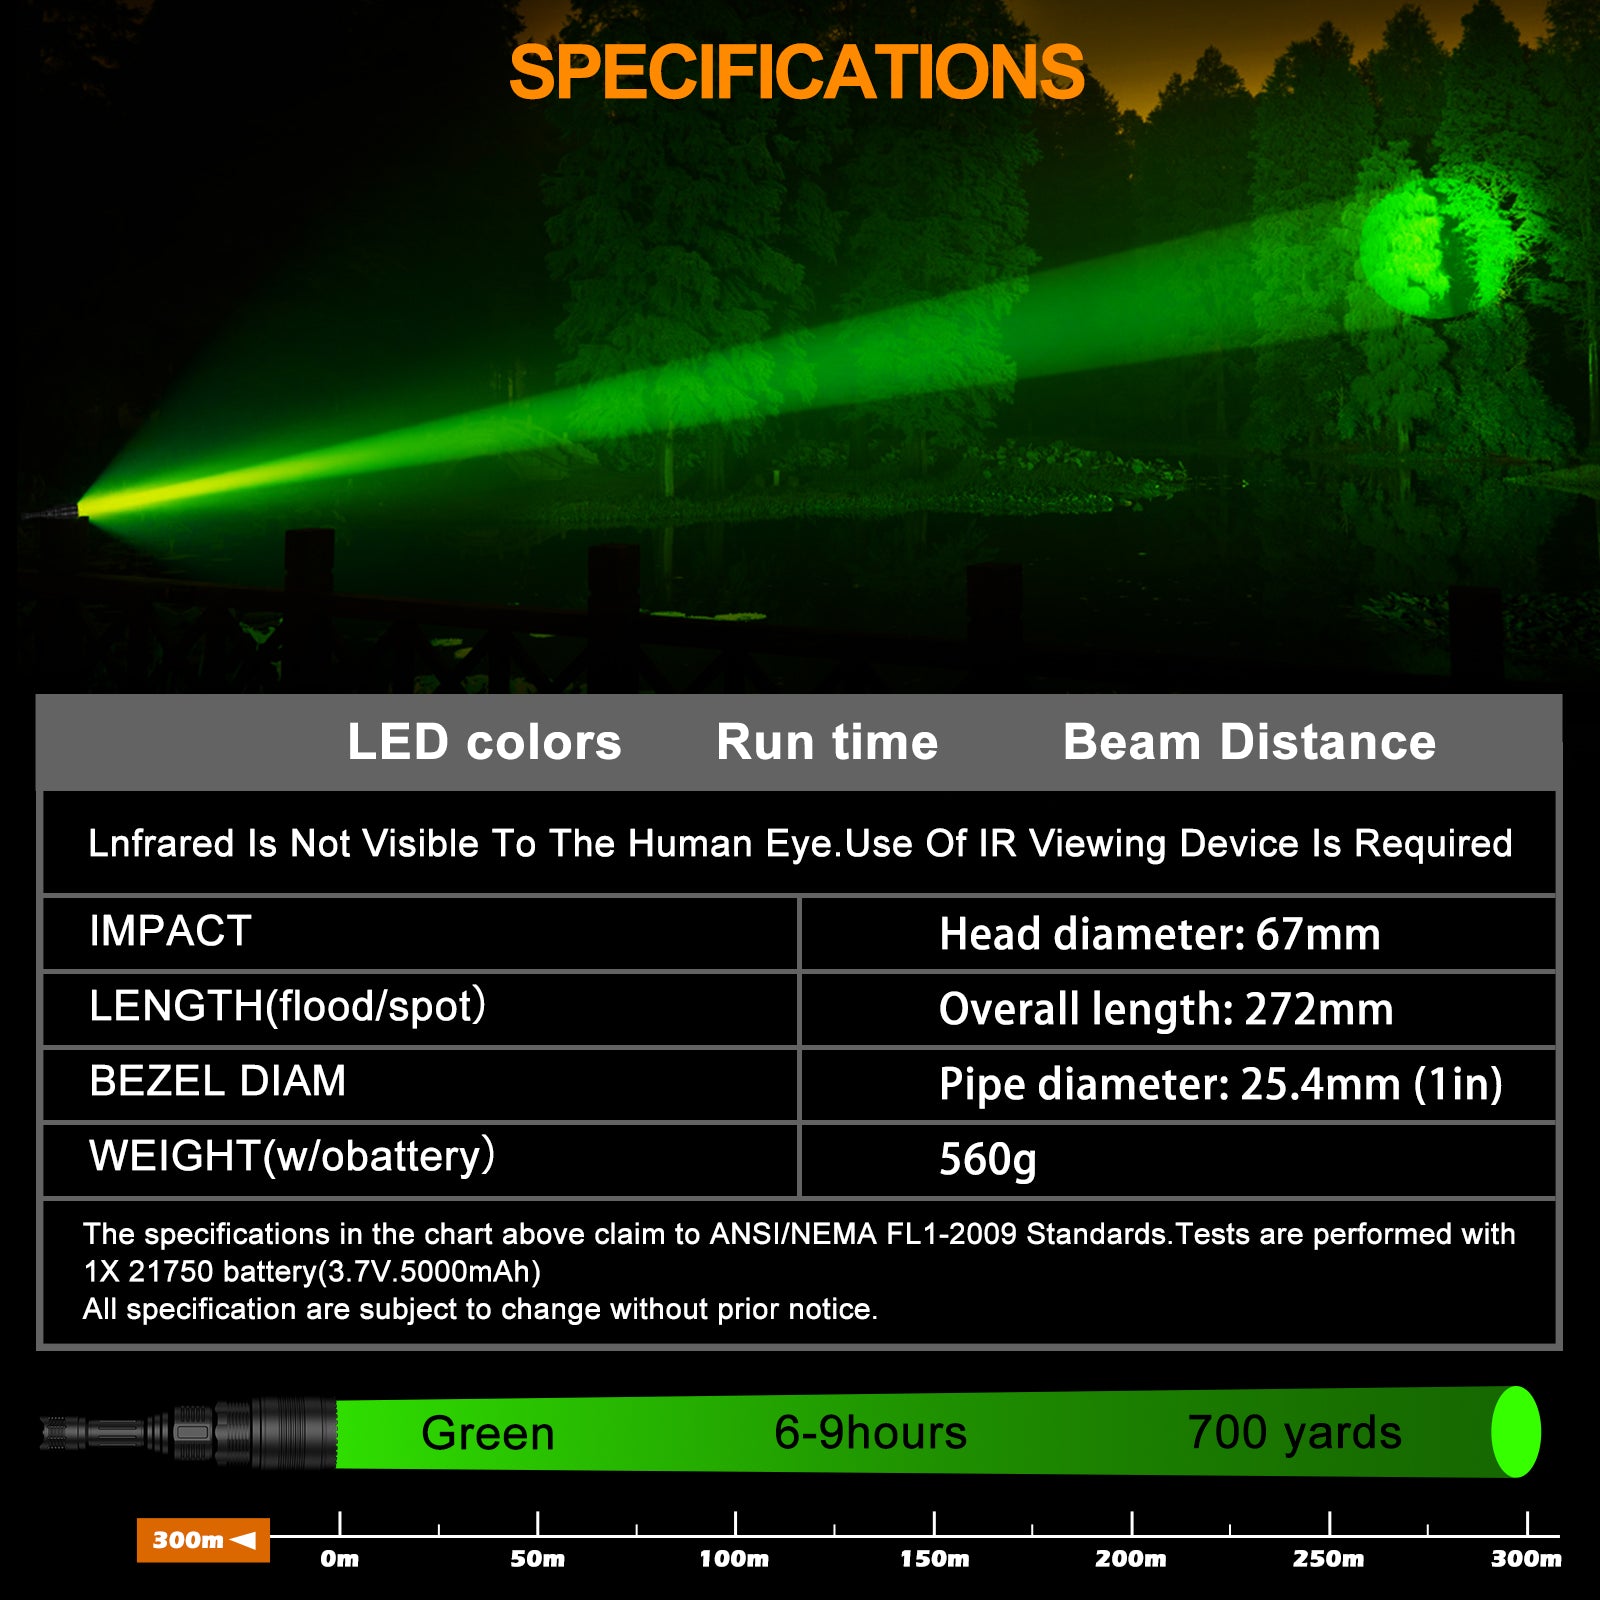 ANEKIM UC90 Green Hunting flashlight